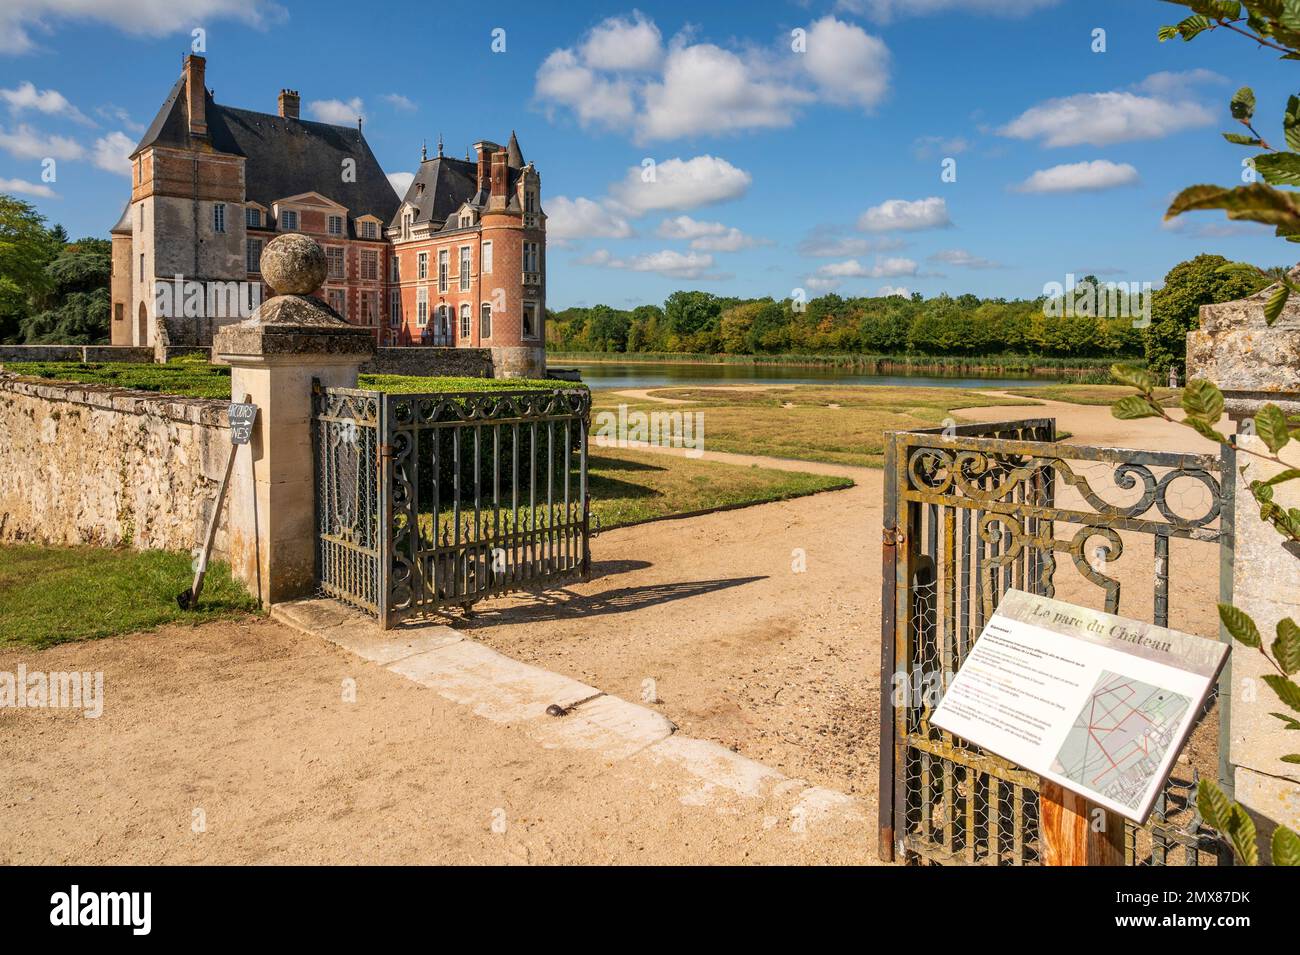 The castle Château La Bussière in the Loiret departement of France Stock Photo